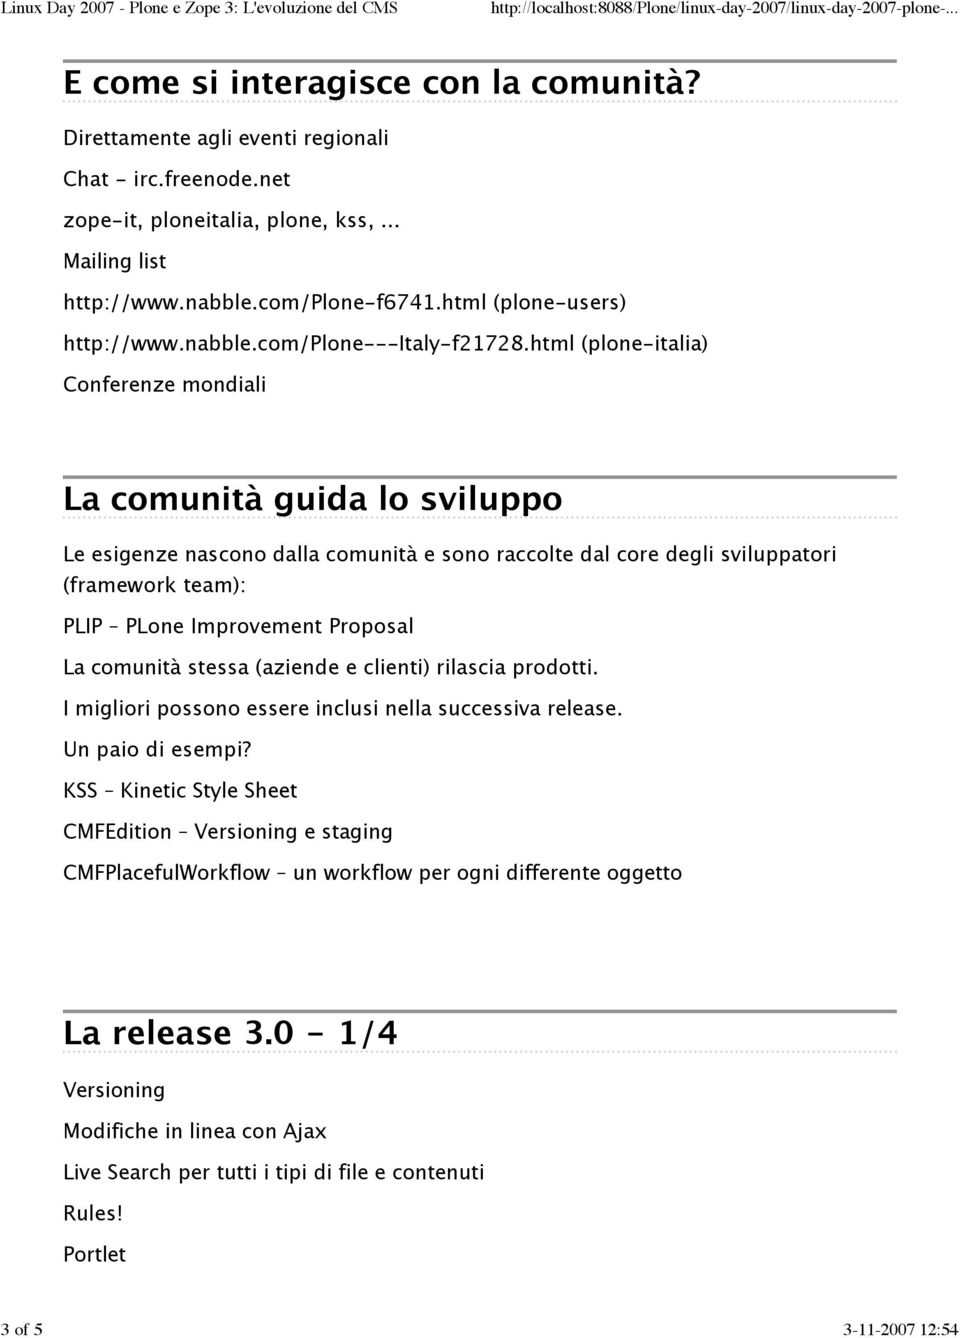 html (plone-italia) Conferenze mondiali La comunita guida lo sviluppo Le esigenze nascono dalla comunita e sono raccolte dal core degli sviluppatori (framework team): PLIP PLone Improvement Proposal